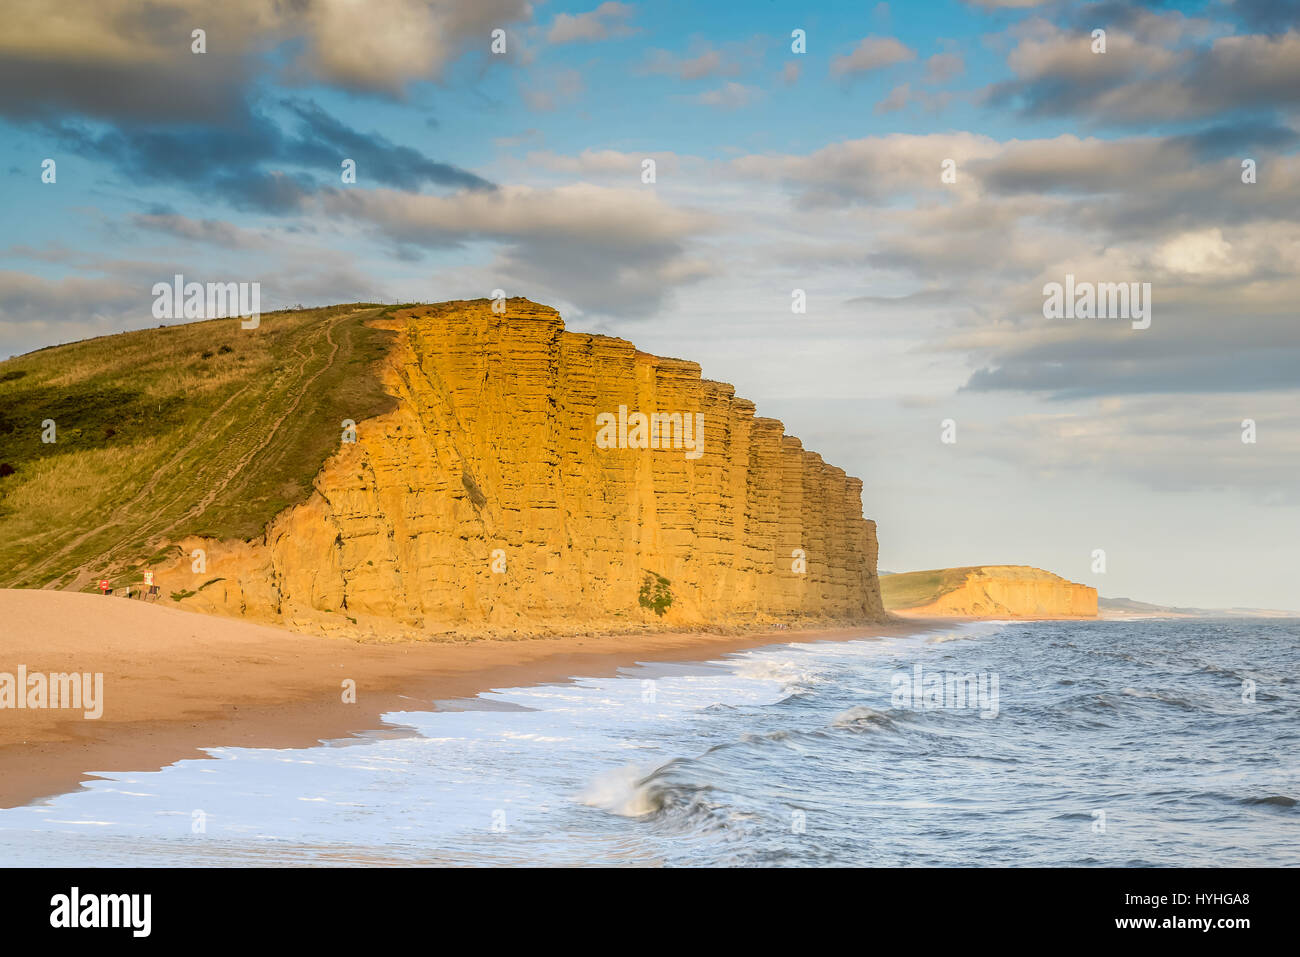 Blick auf die Klippen von West Bay, Dorset. Dieses Bild wurde vom Hafen Pier aufgenommen. Stockfoto